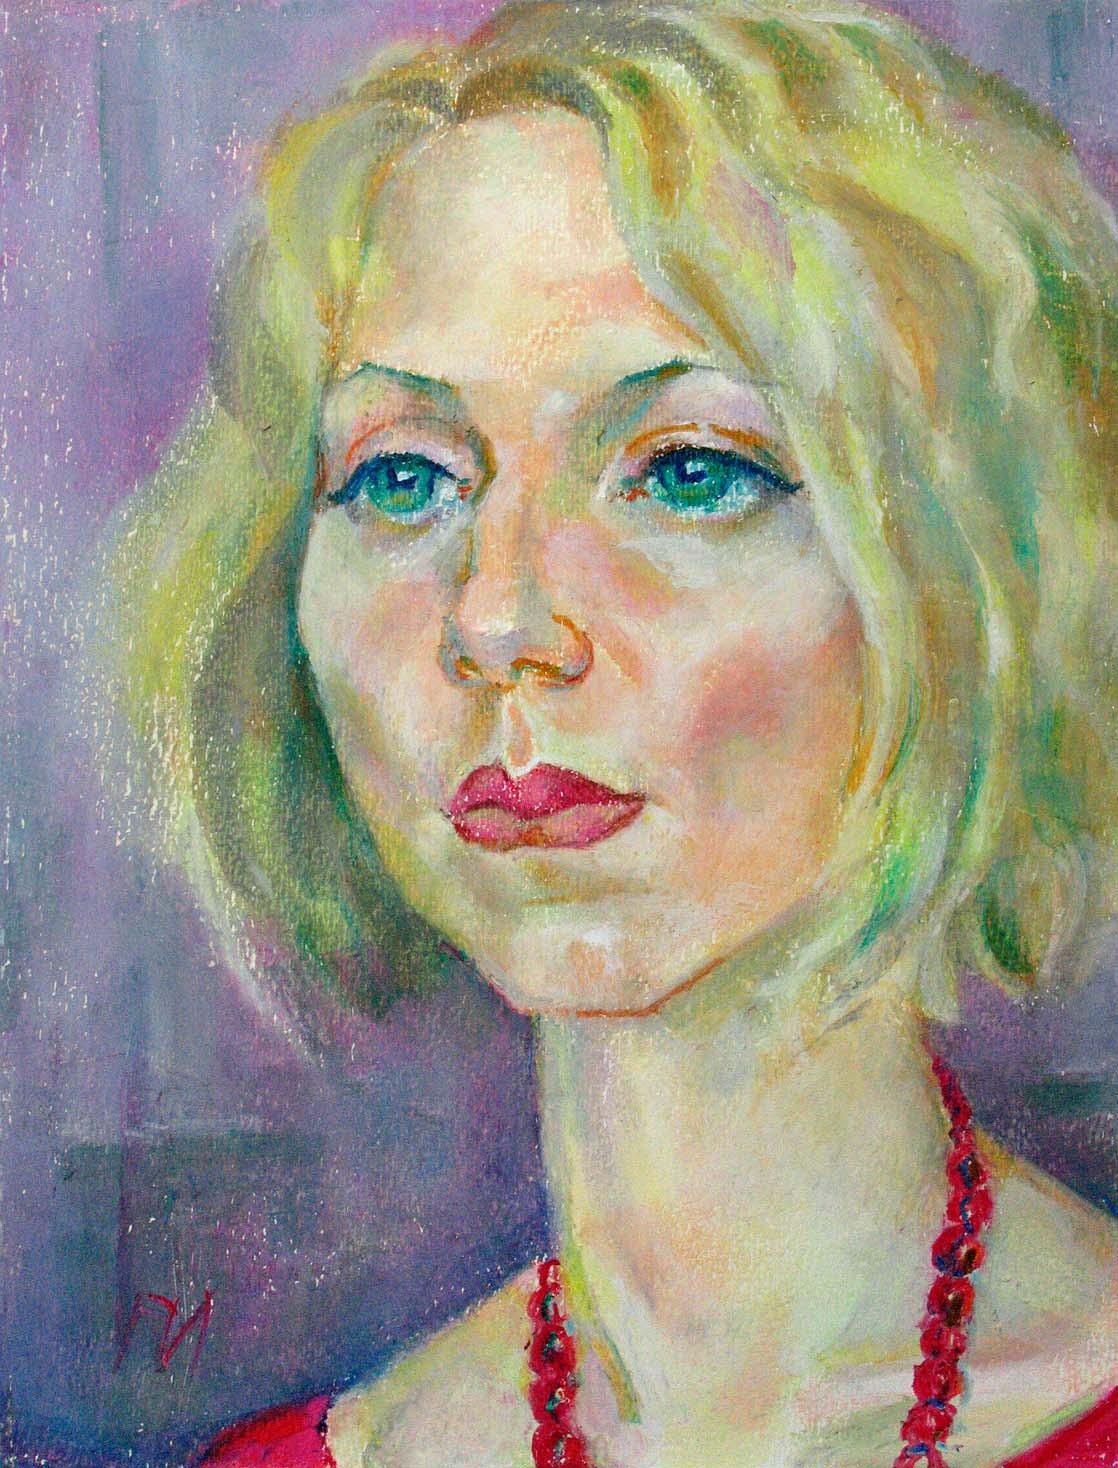 ALLA , paper, oil pastel, 35  27 cm, 2011



